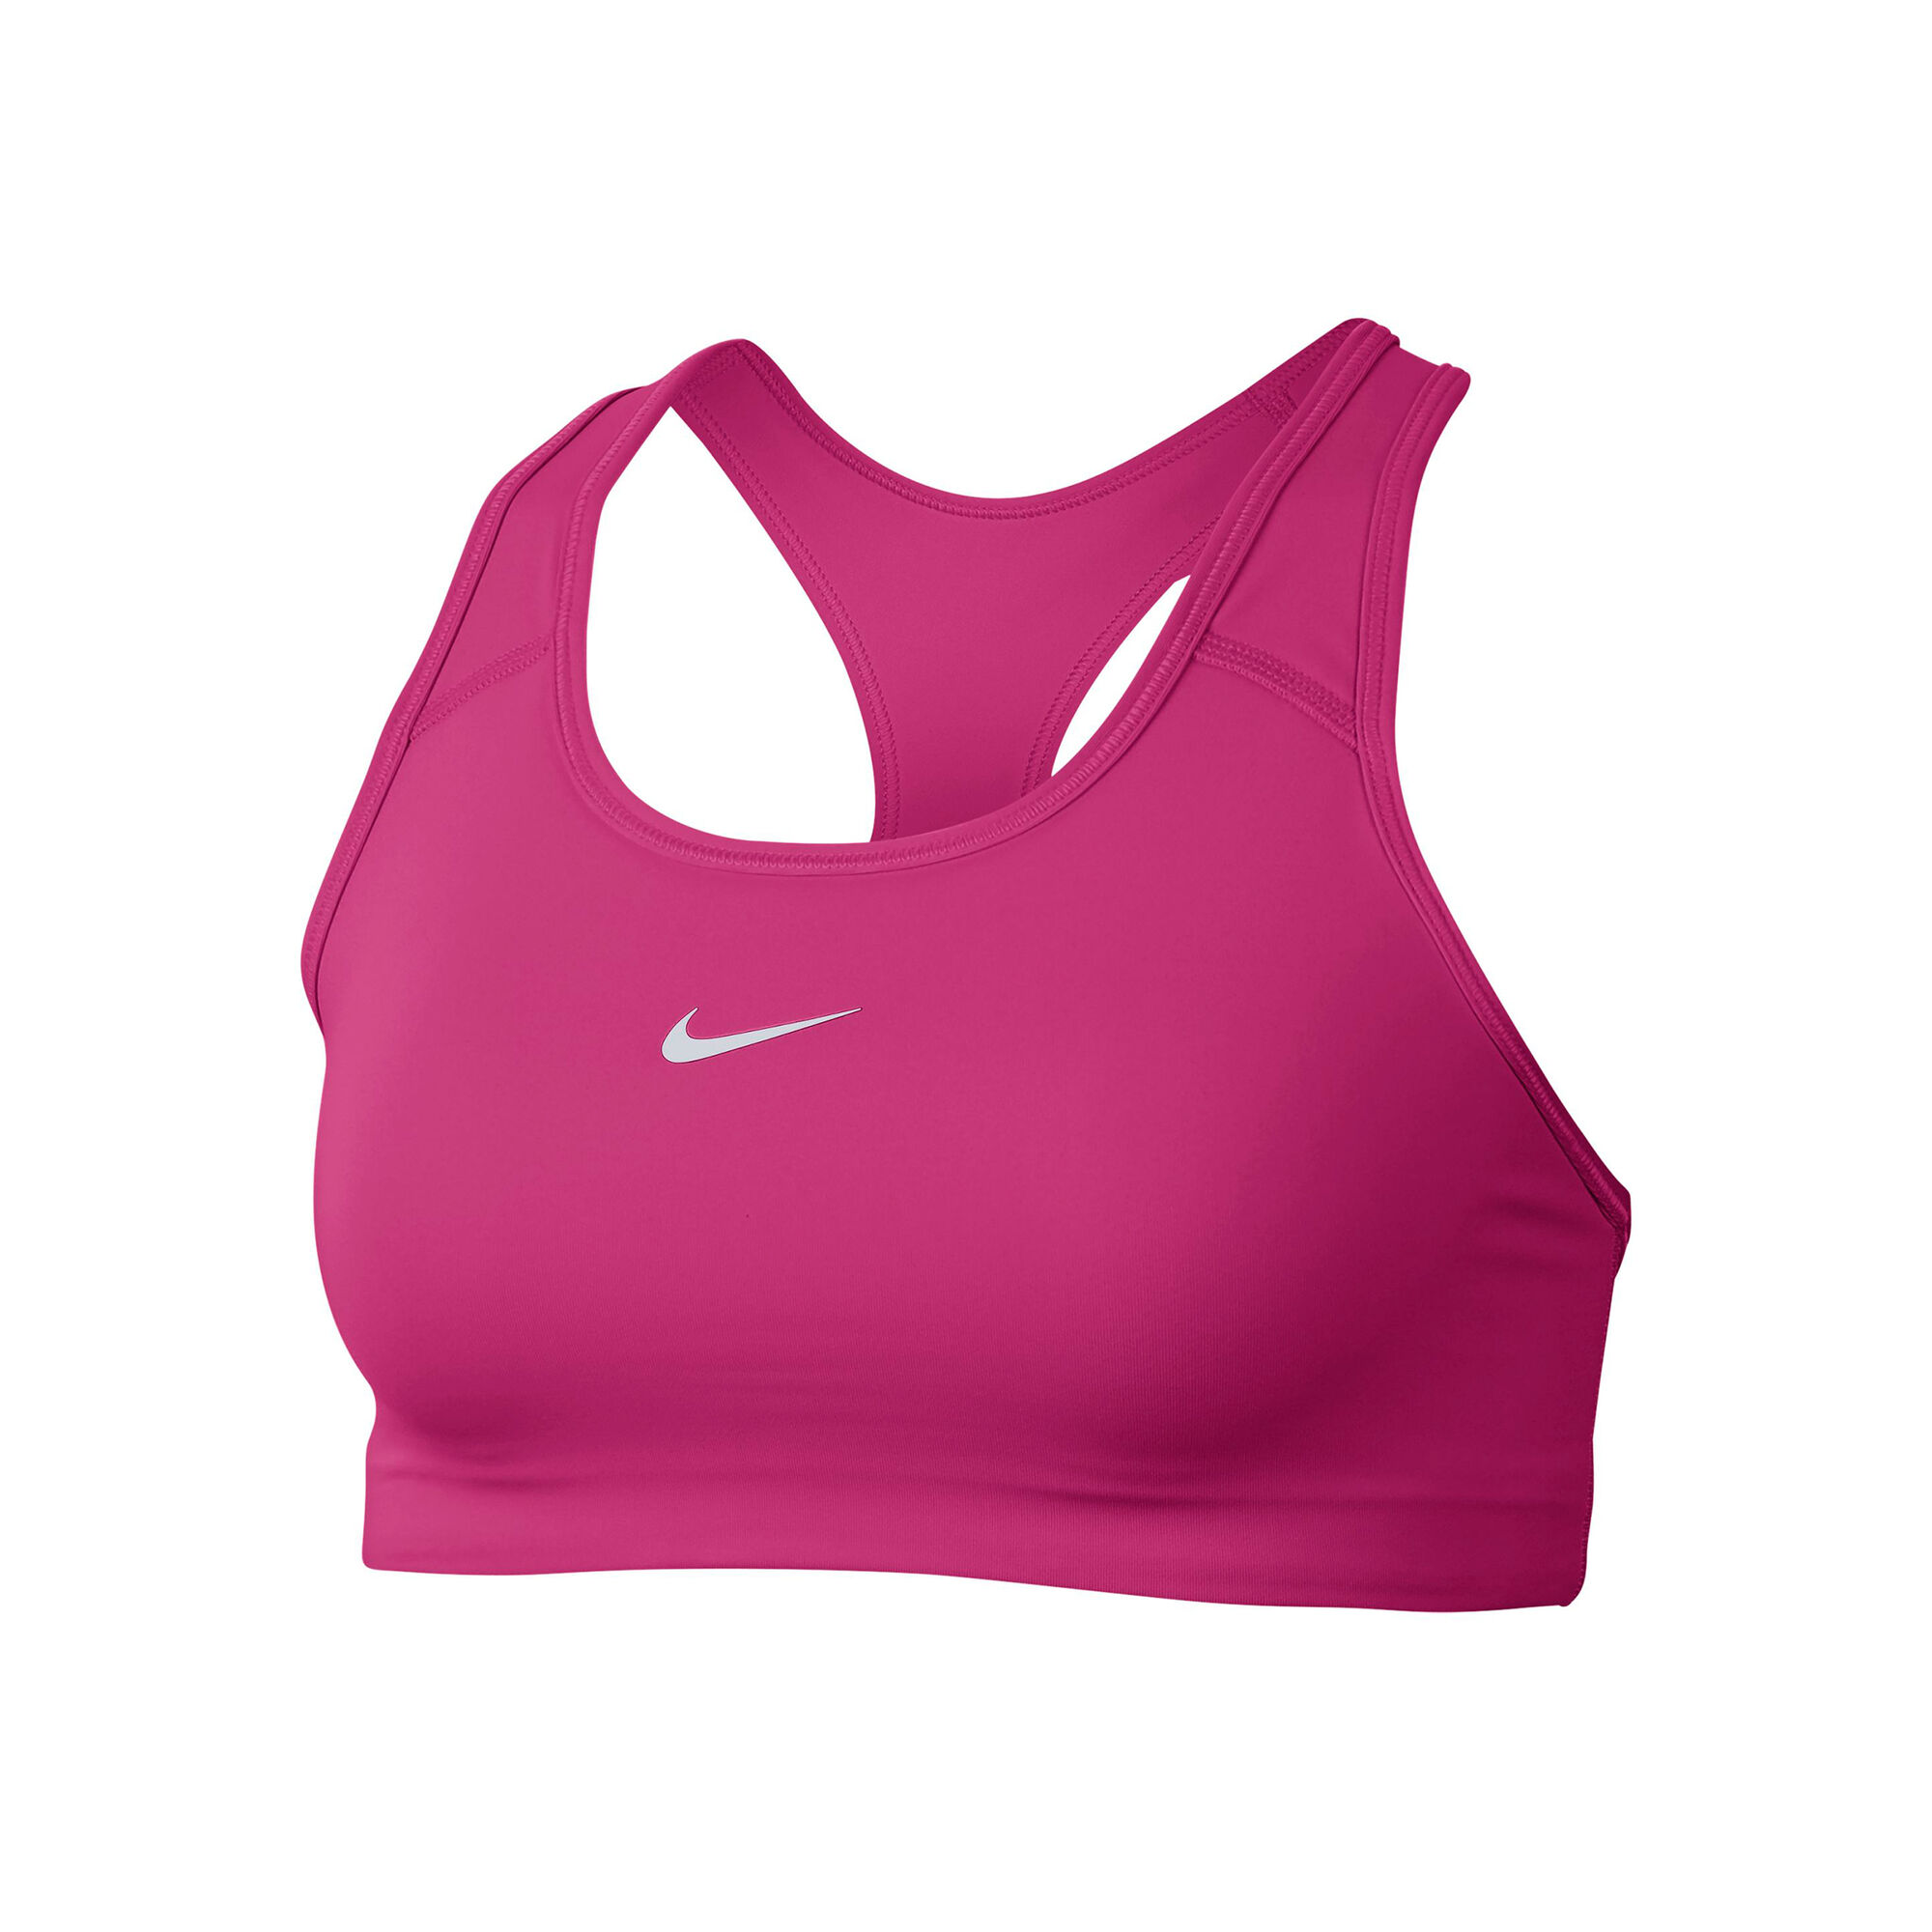 Nike Swoosh Sports Bras Women - Pink online Padel-Point